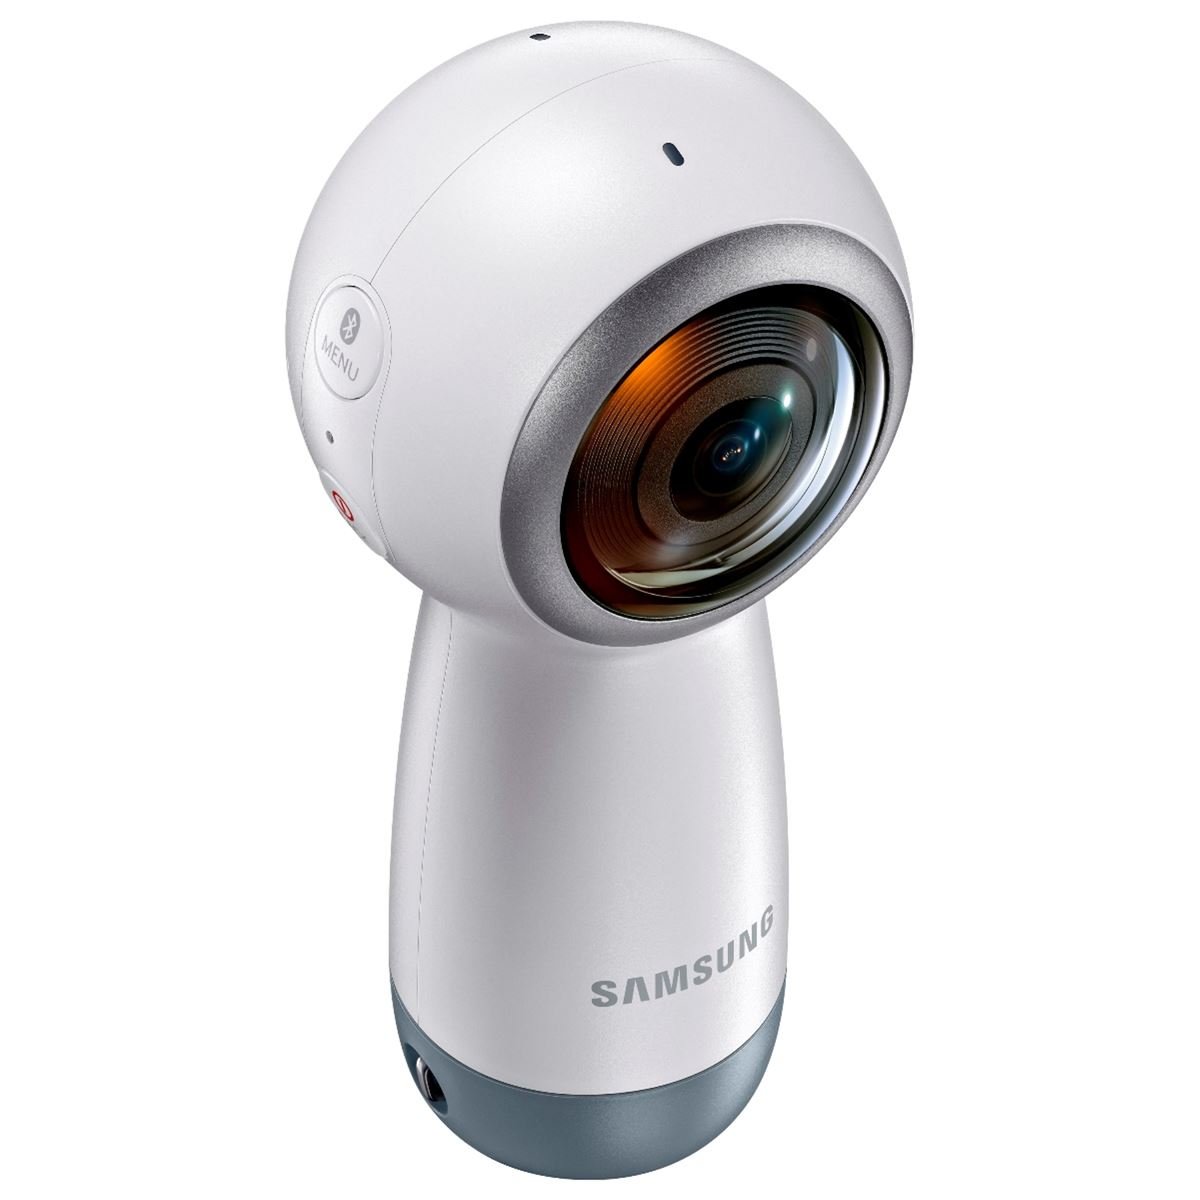 Videocamara Samsung Gear 360 4k 8.4